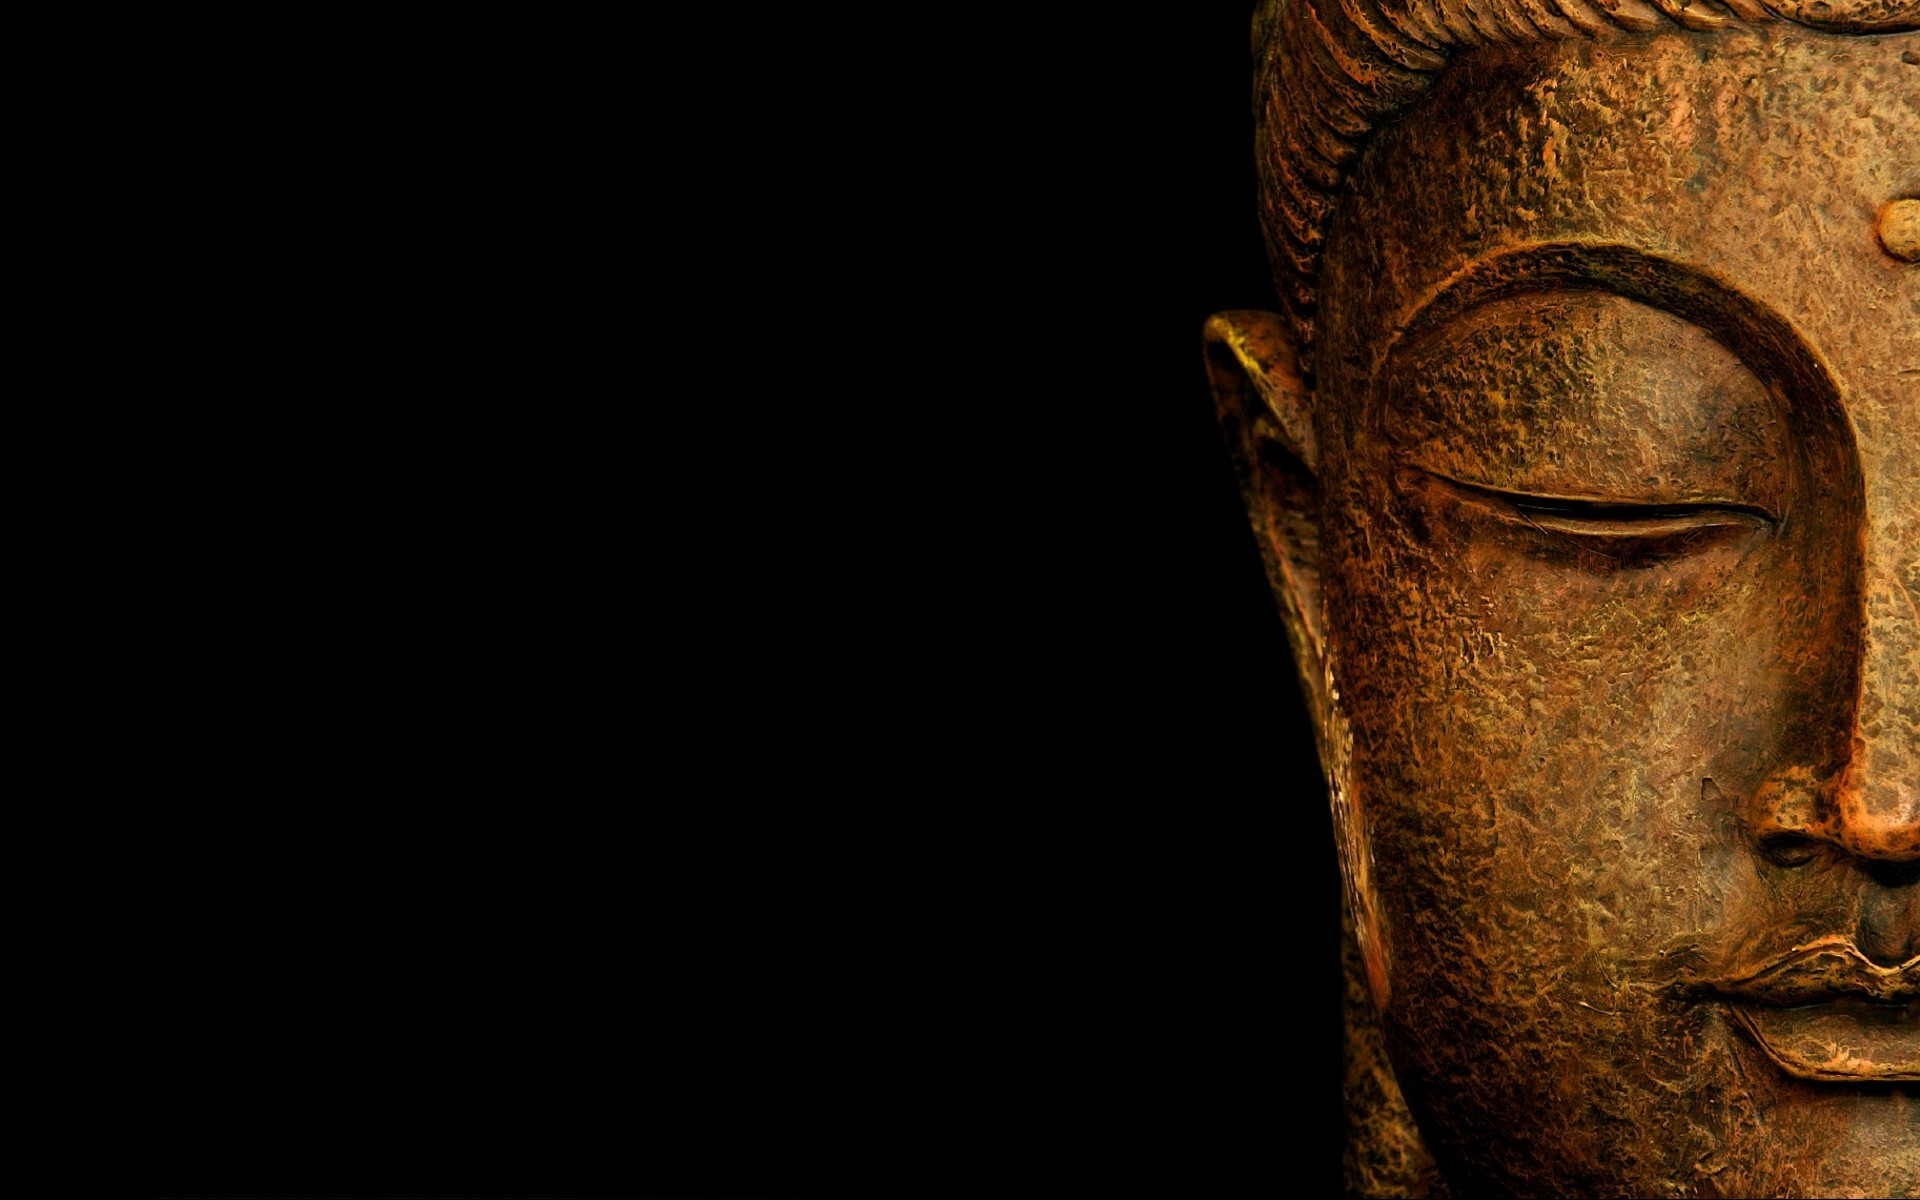 1920x1200 Ð face of Buddha wallpapers and images - wallpapers, pictures, photos